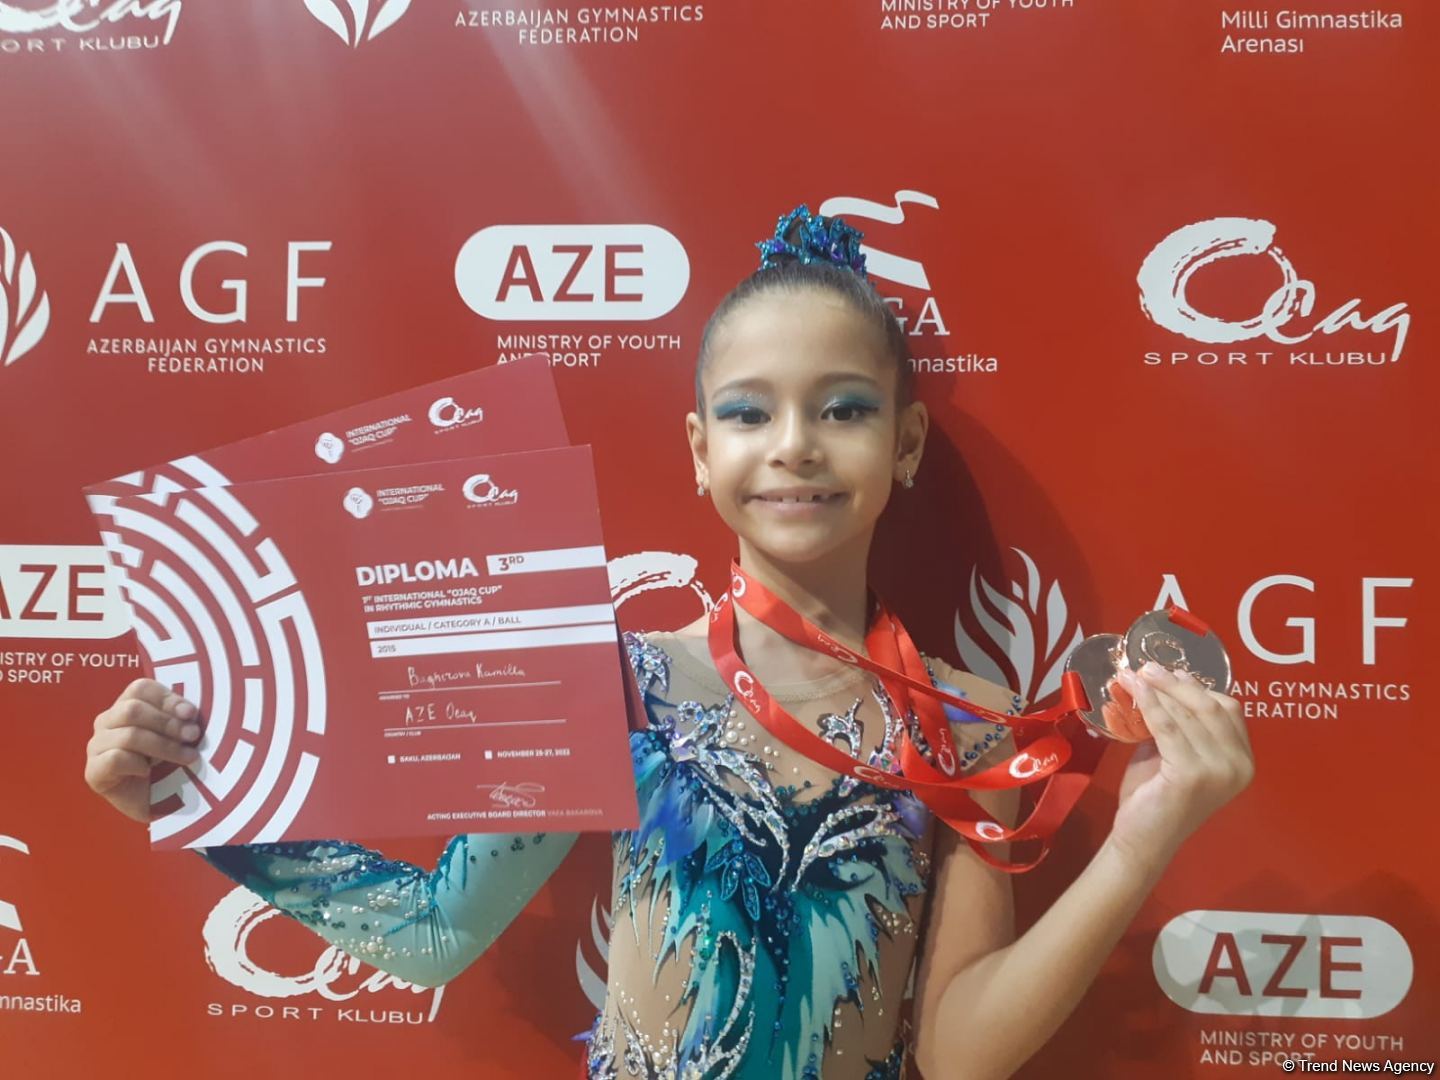 Участниц 1-го Международного кубка "Оджаг" объединяет большая любовь к художественной гимнастике – бронзовый призер соревнований